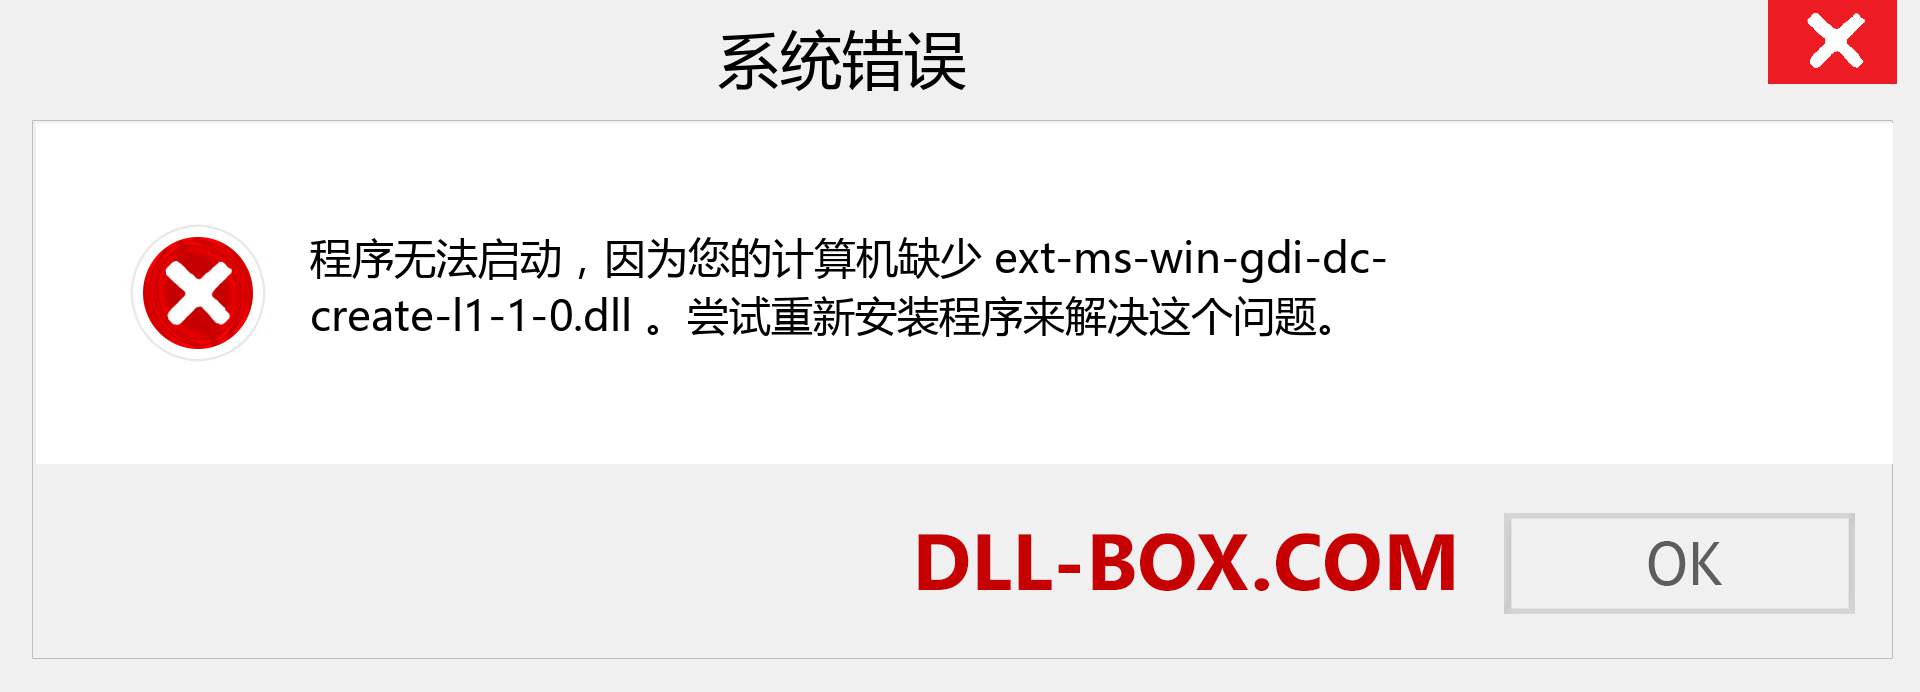 ext-ms-win-gdi-dc-create-l1-1-0.dll 文件丢失？。 适用于 Windows 7、8、10 的下载 - 修复 Windows、照片、图像上的 ext-ms-win-gdi-dc-create-l1-1-0 dll 丢失错误